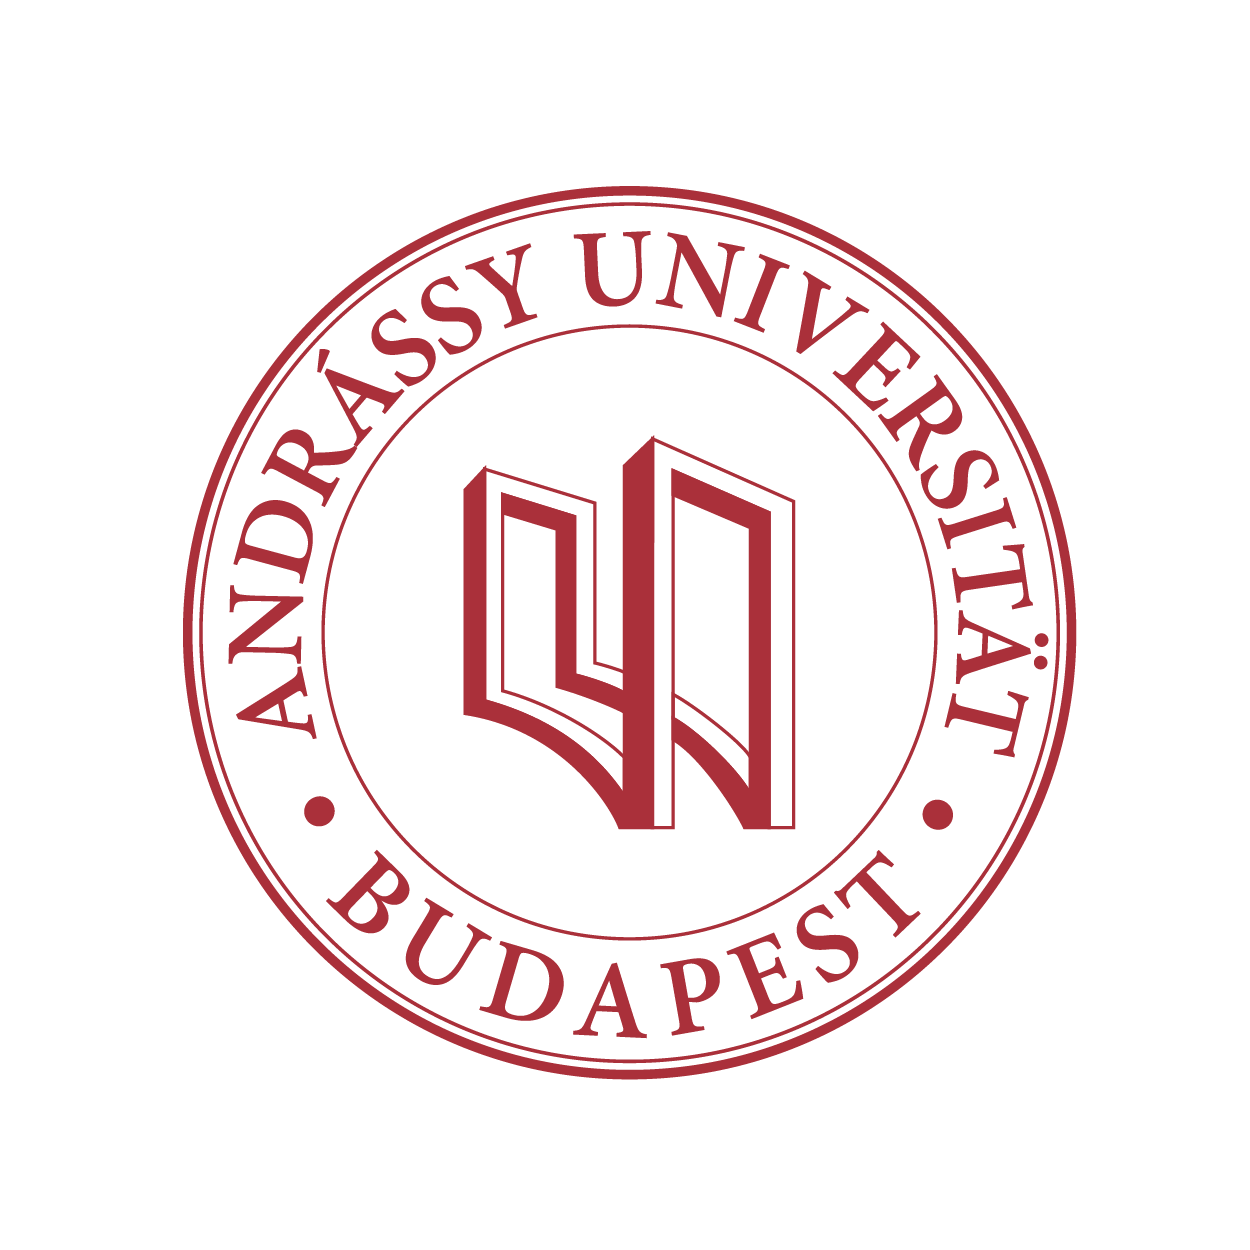 Andrássy Universität Budapest